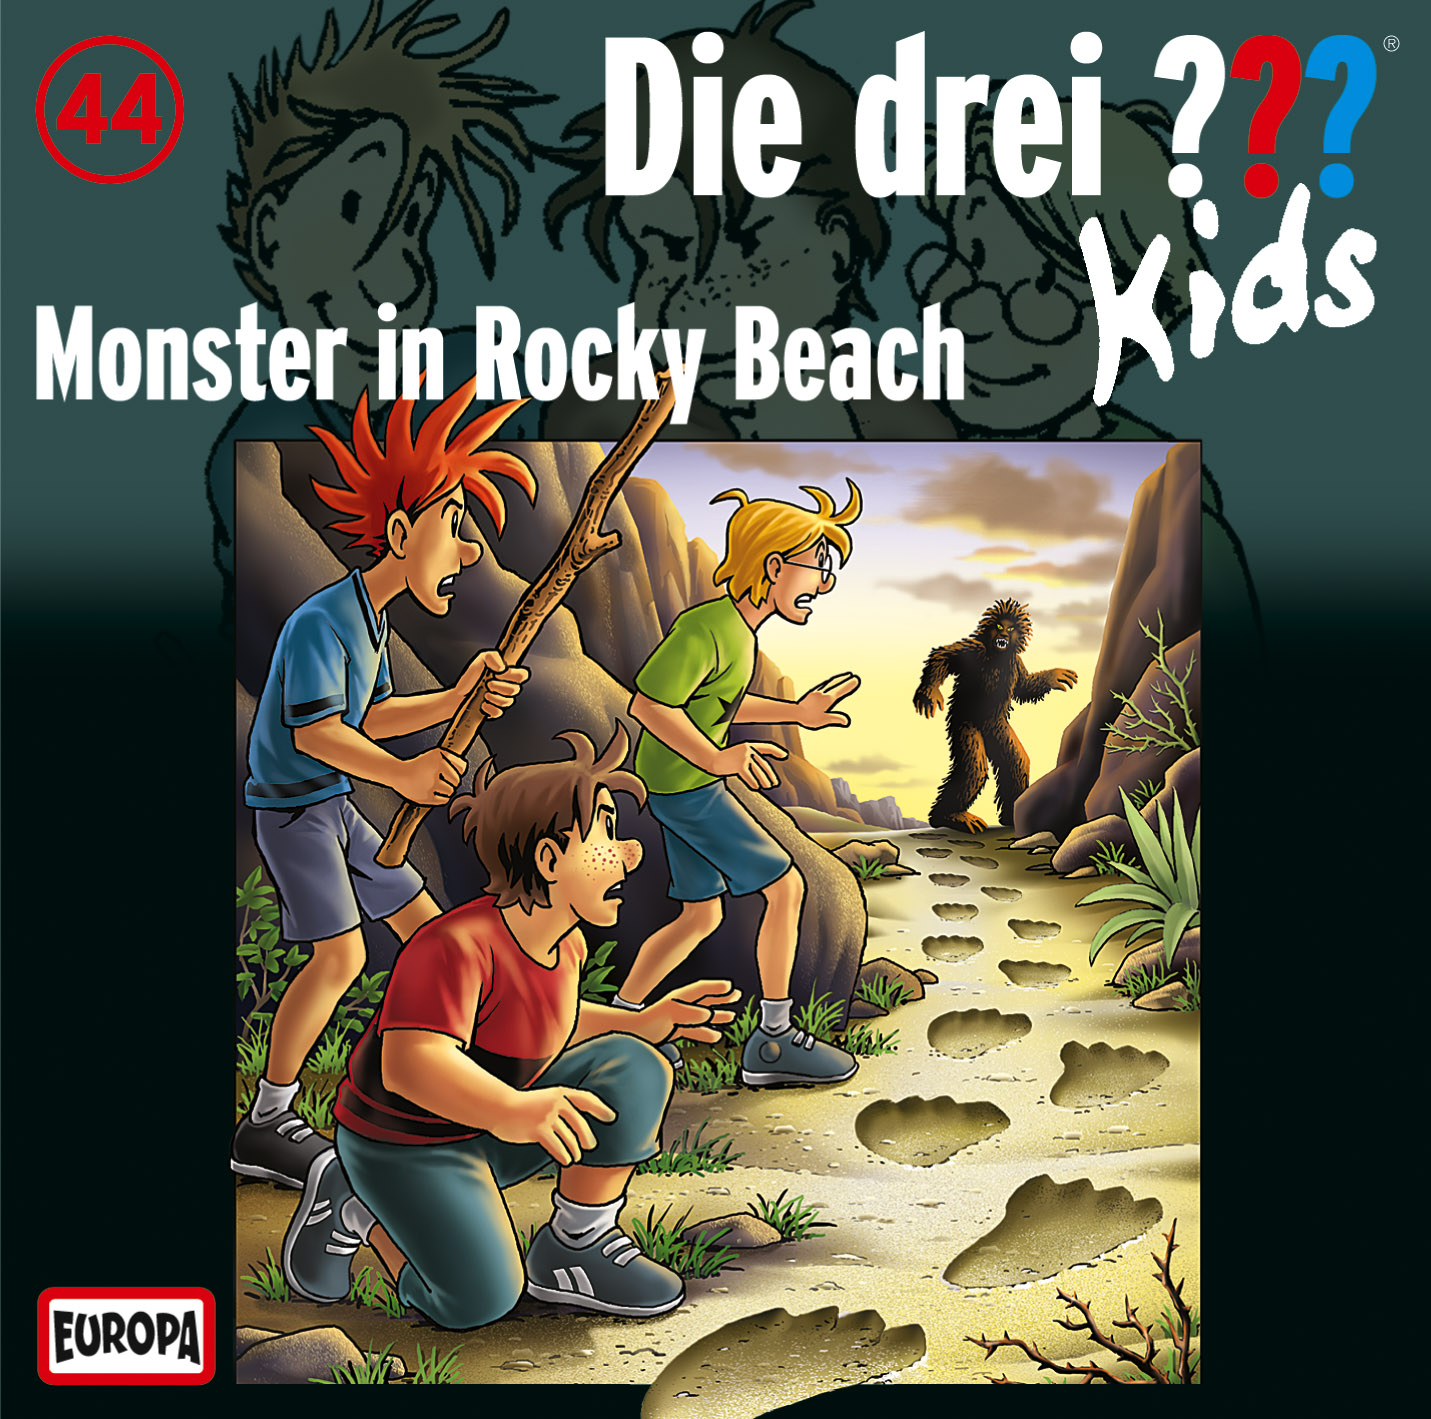 Die drei ??? Kids: Monster in Rocky Beach